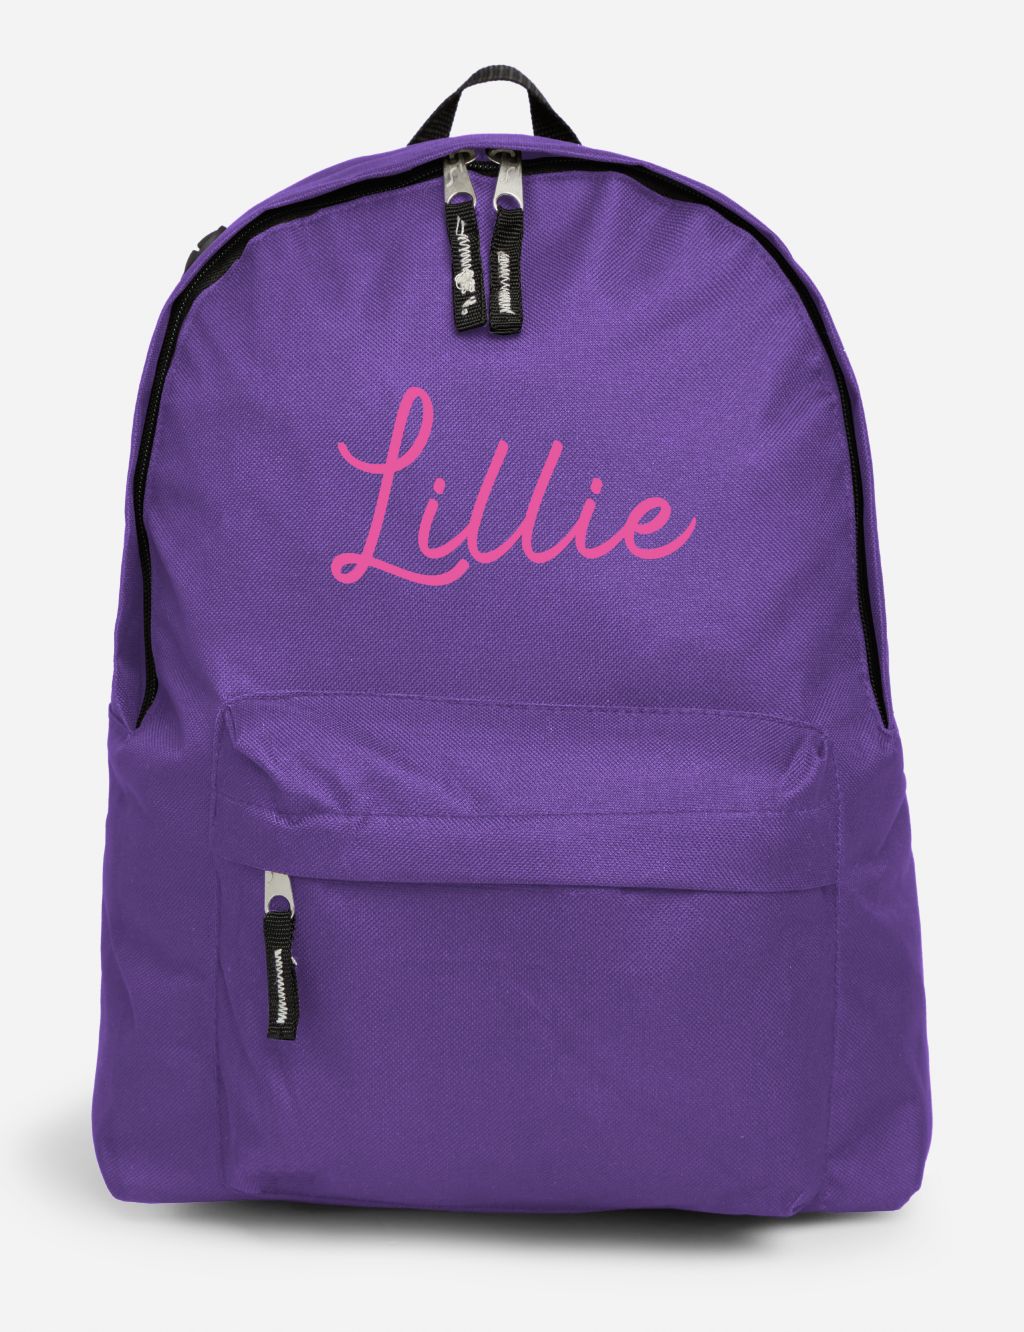 Personalised Kids Backpack image 1